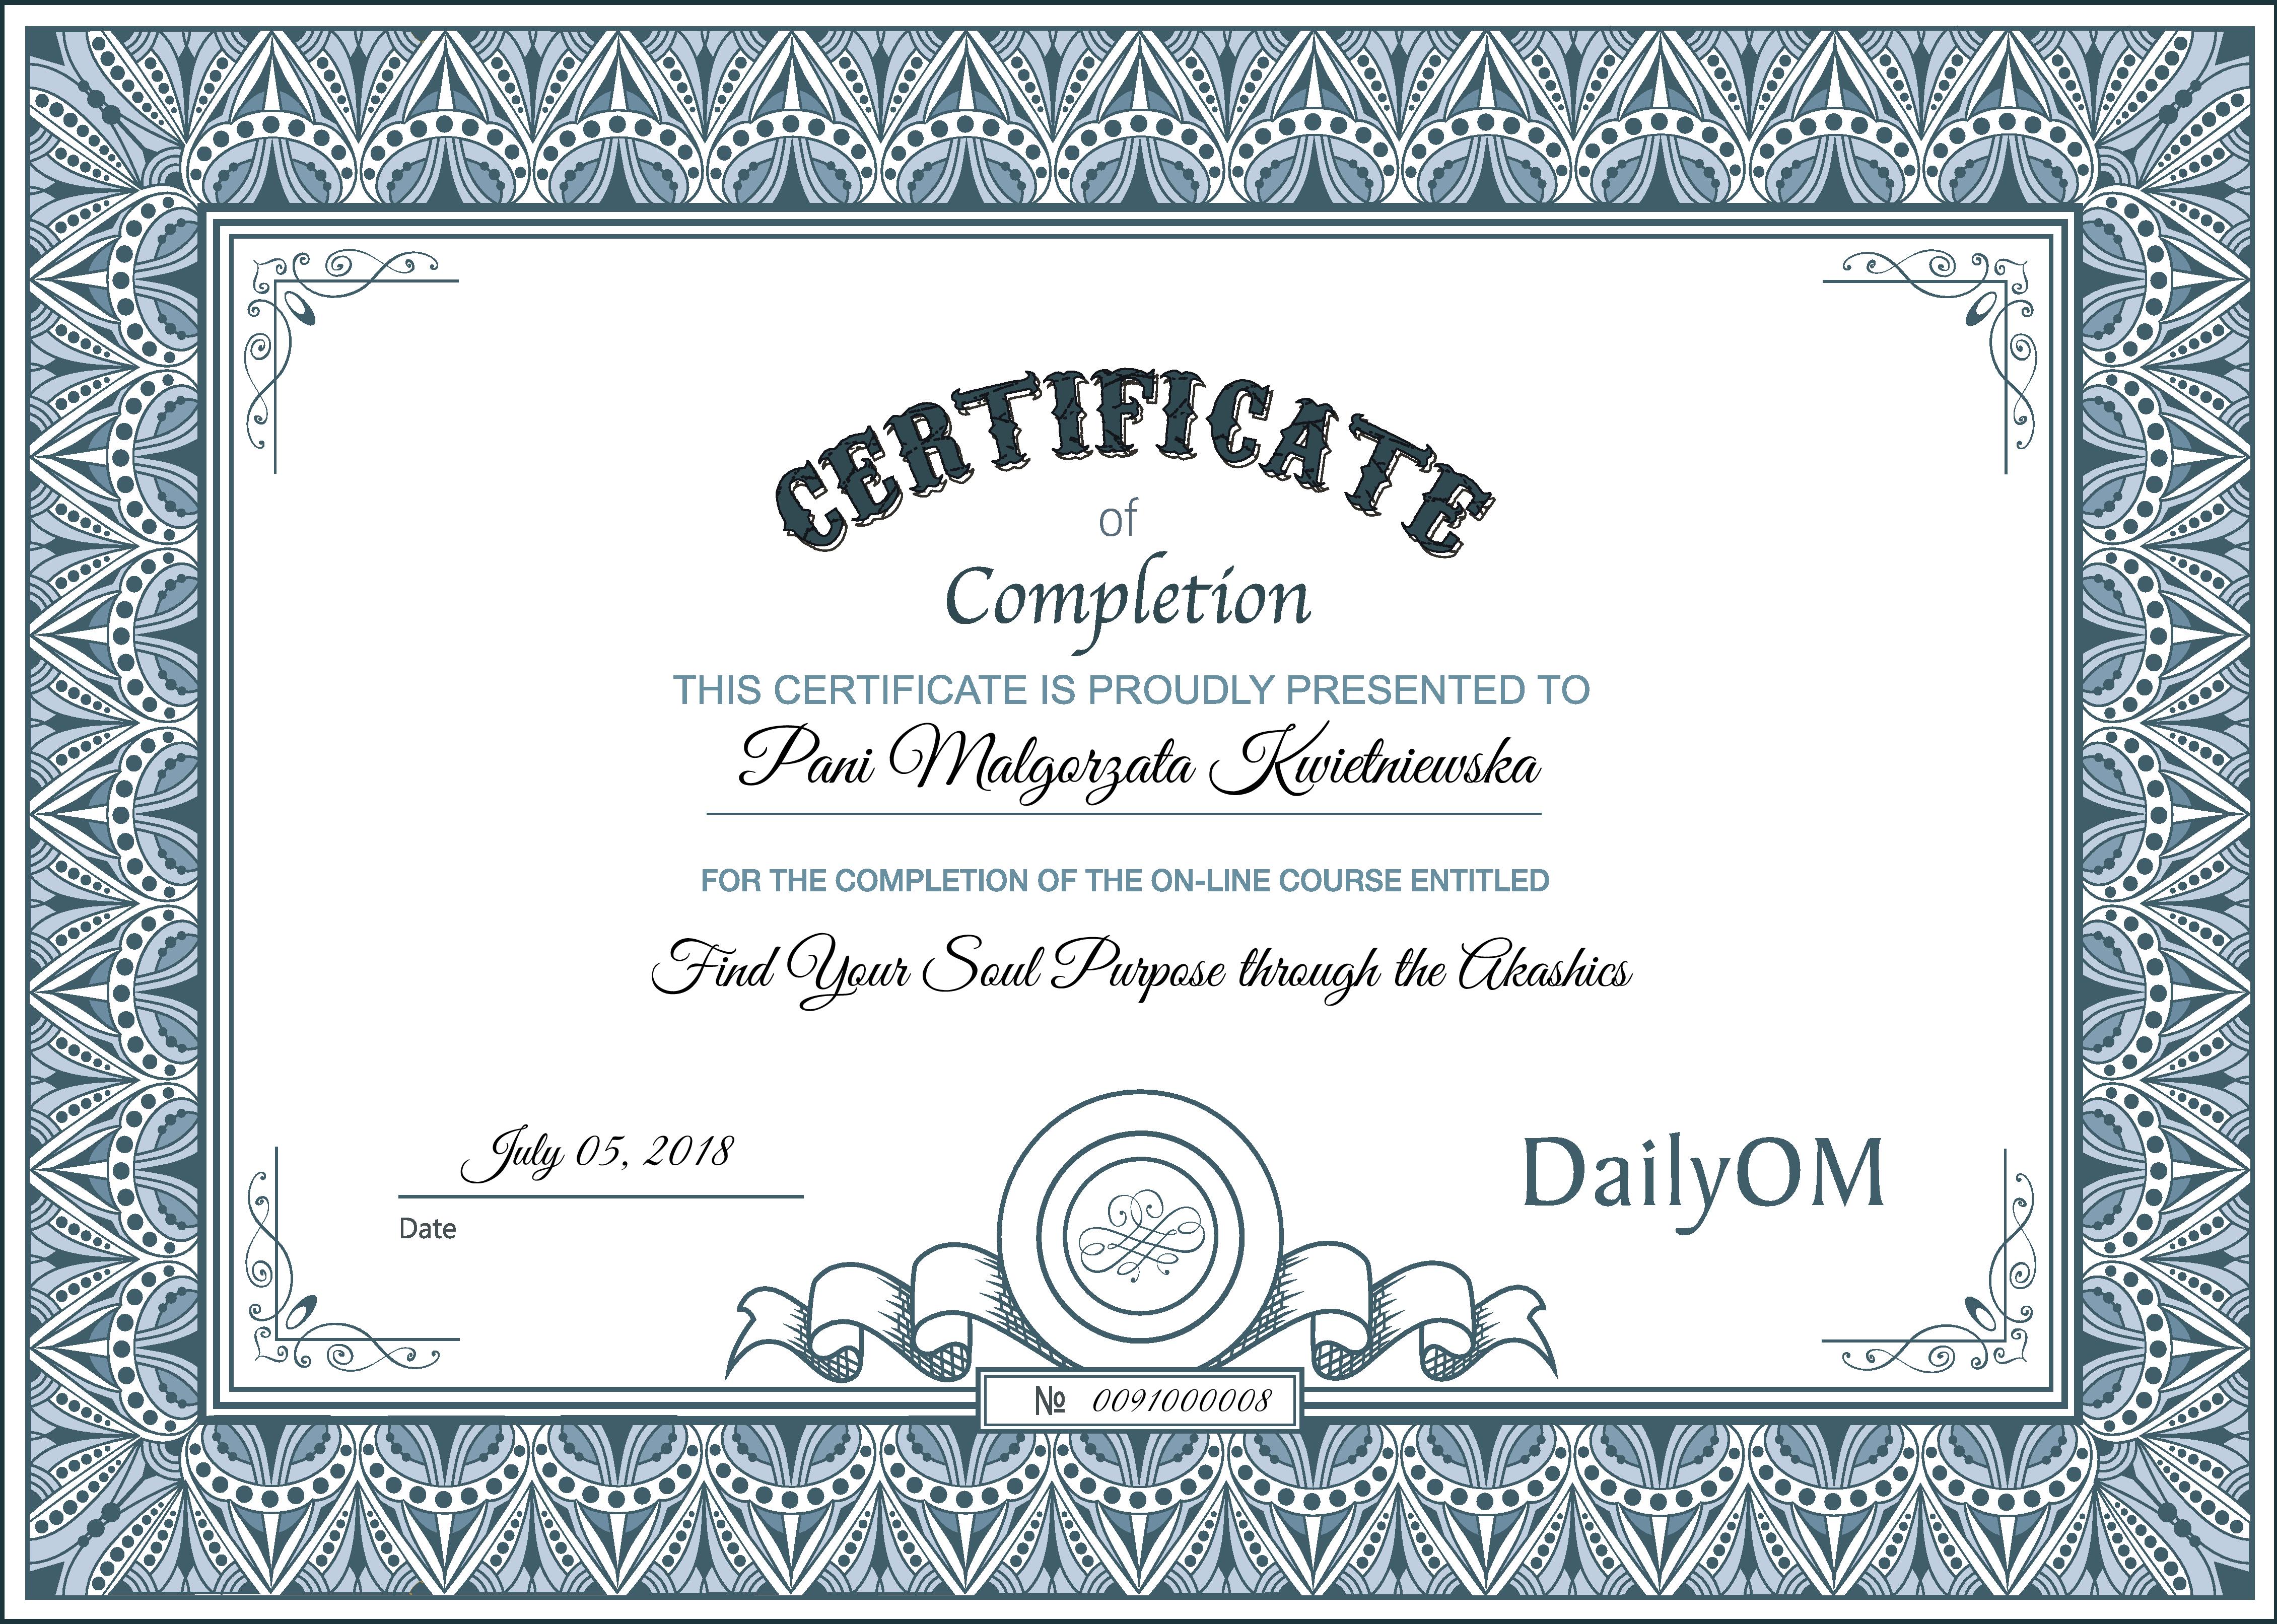 DailyOM_Certificate Soul Purpose-page-001